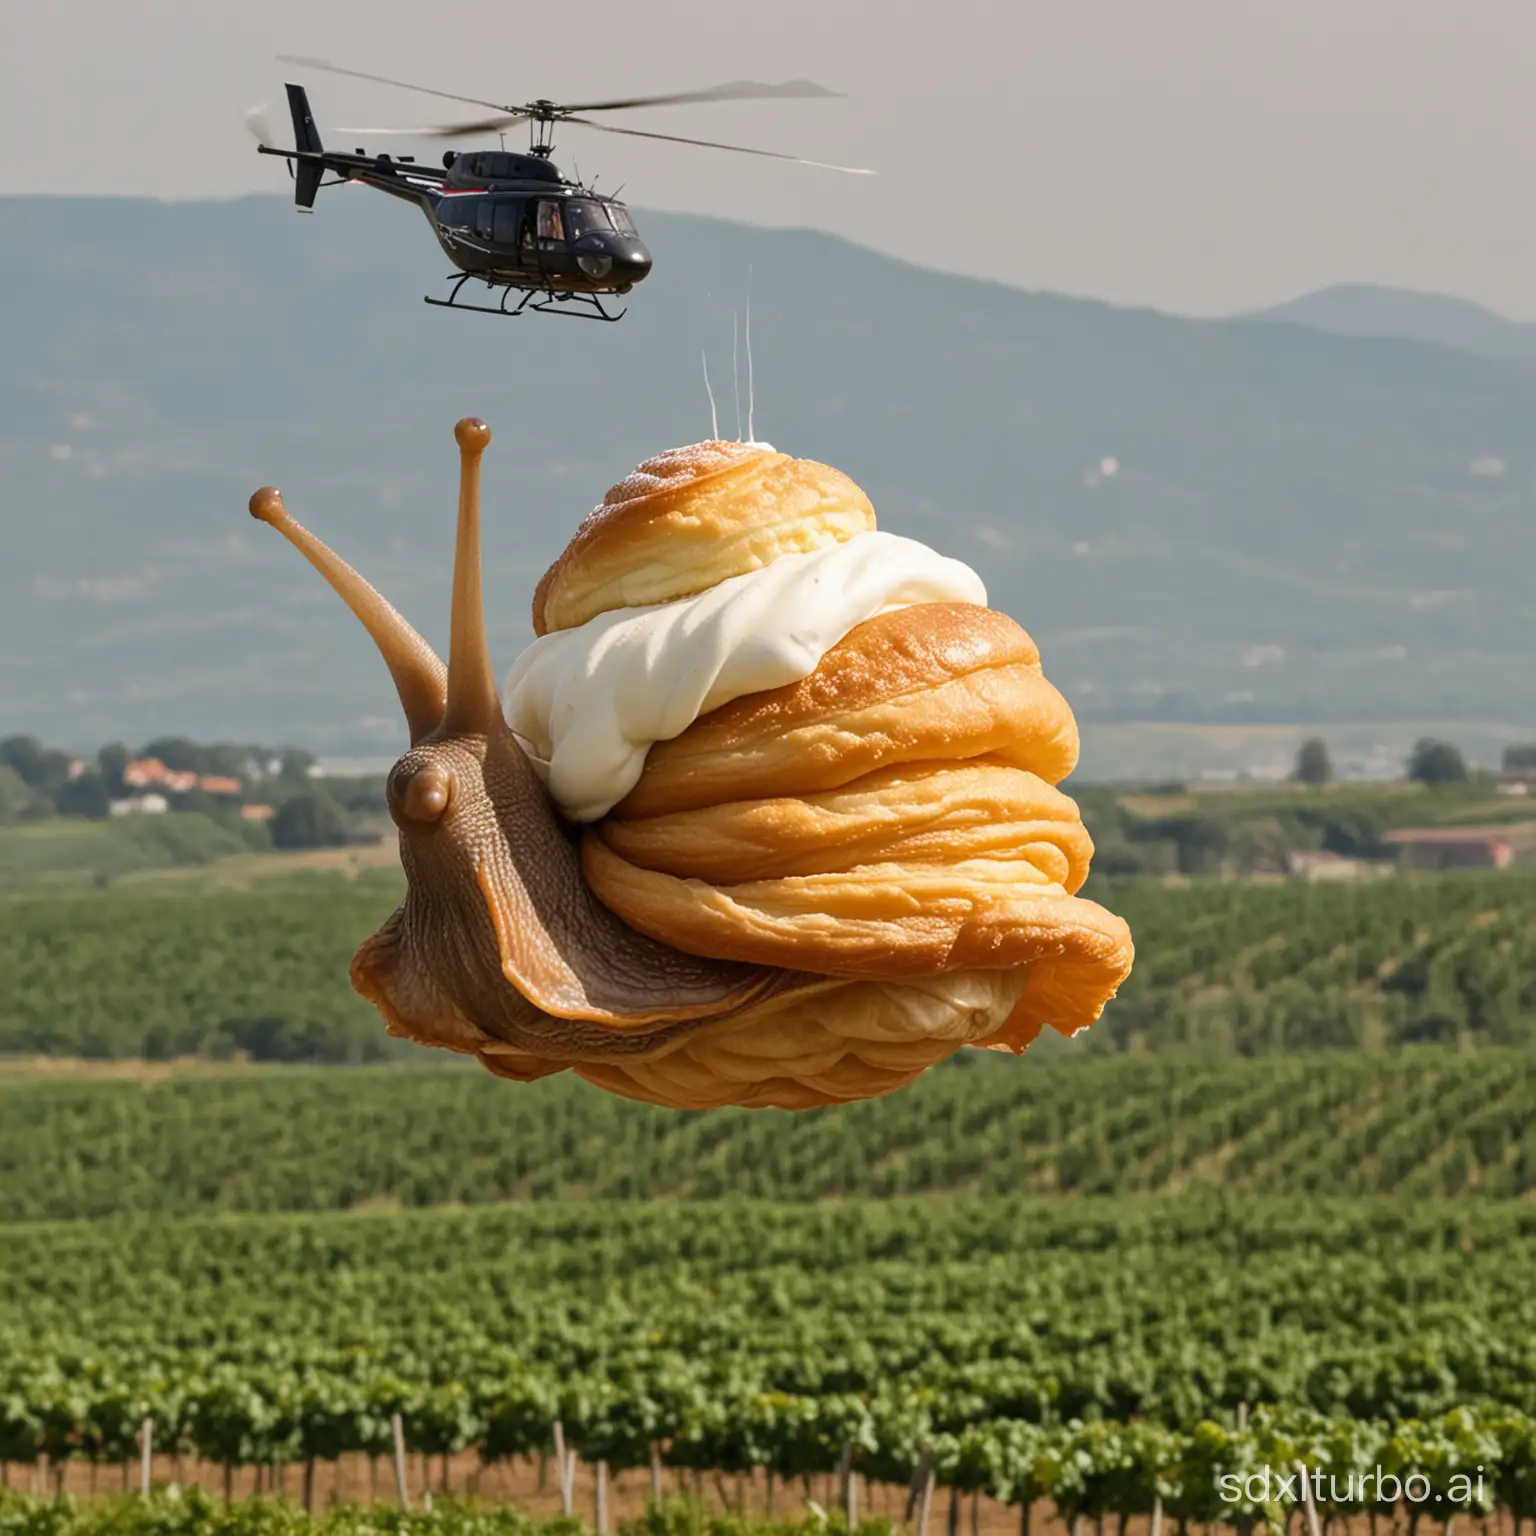 eine riesige weinbergschnecke die anstatt eines hauses einen windbeutel auf dem rücken hat und großen helikopterfügeln